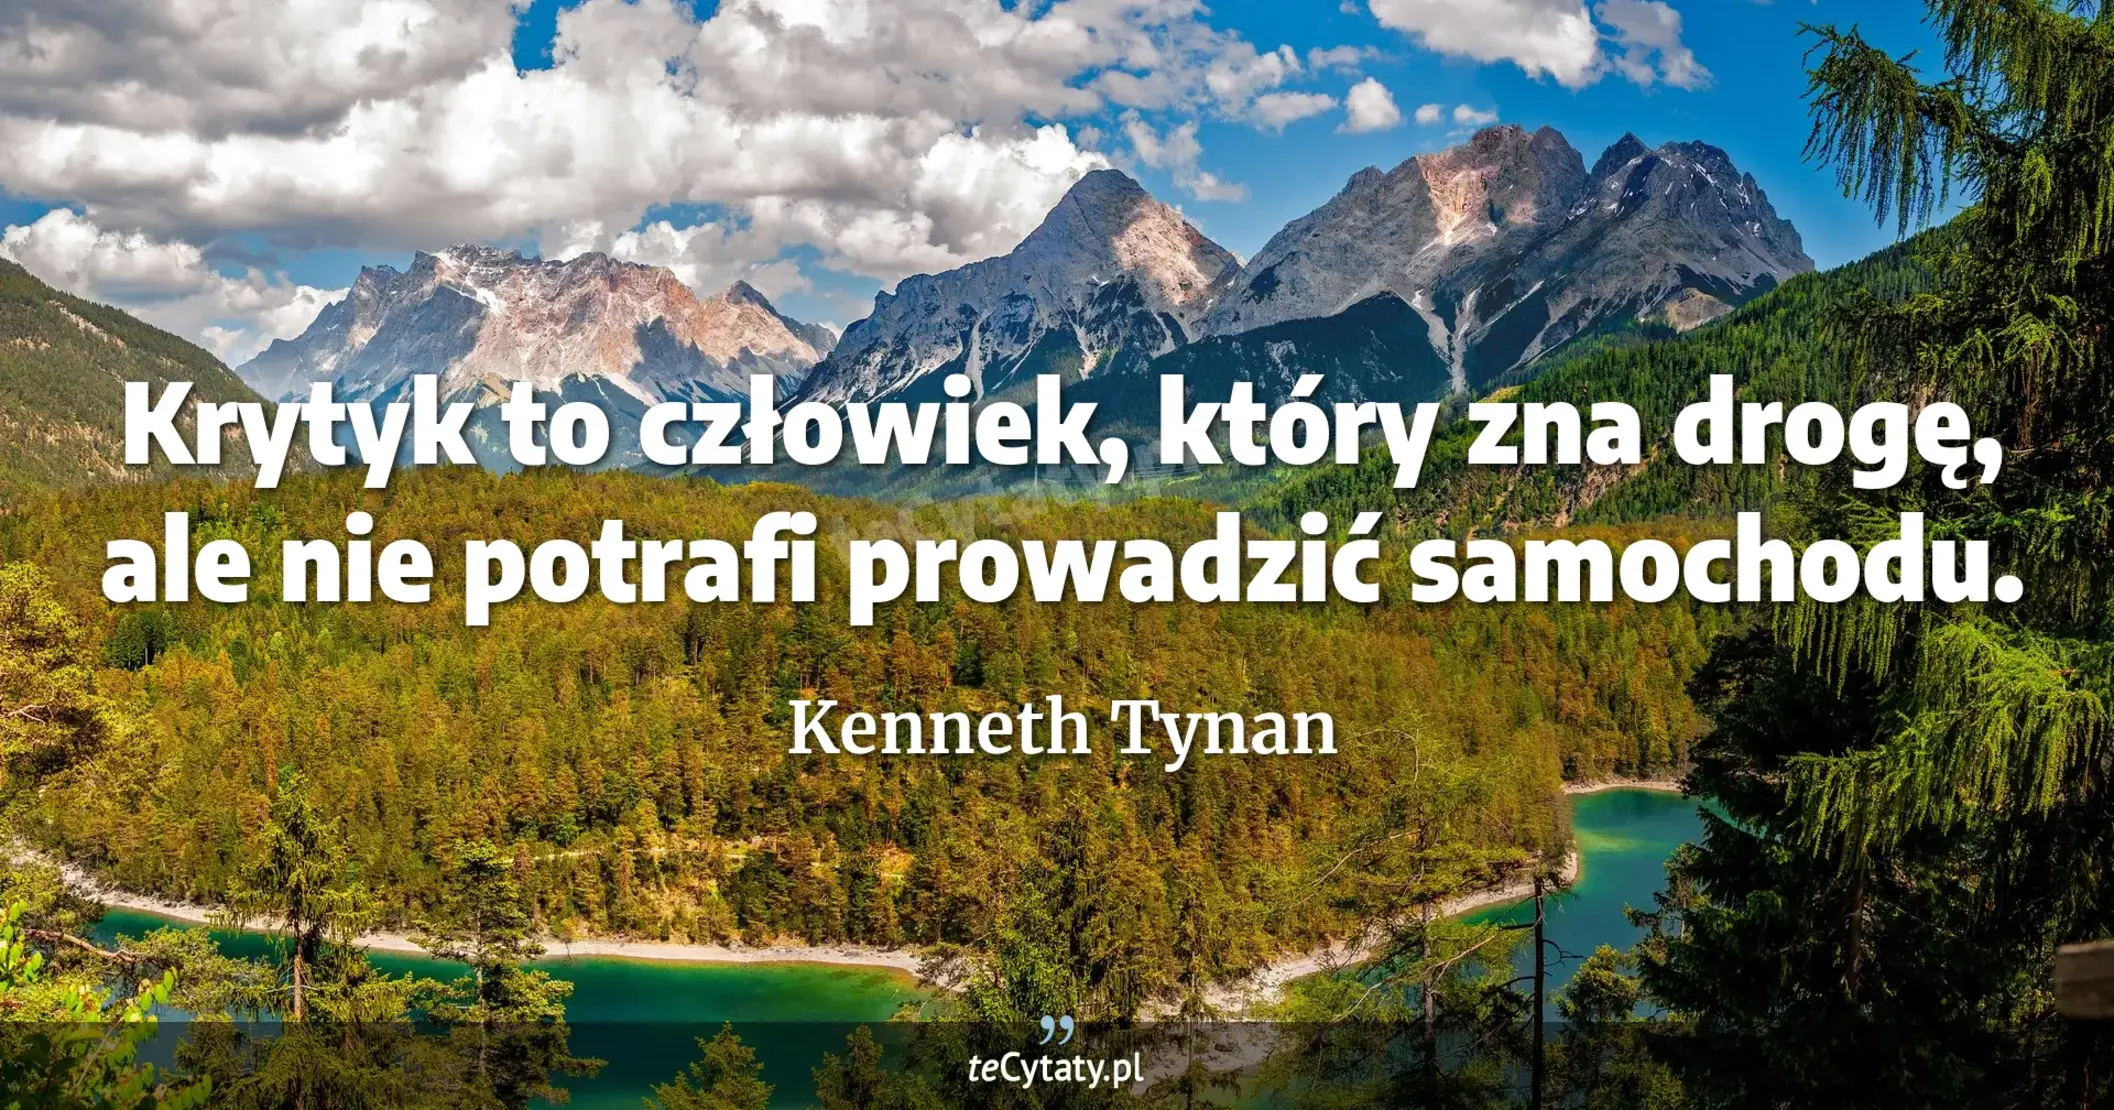 Krytyk to człowiek, który zna drogę, ale nie potrafi prowadzić samochodu. - Kenneth Tynan